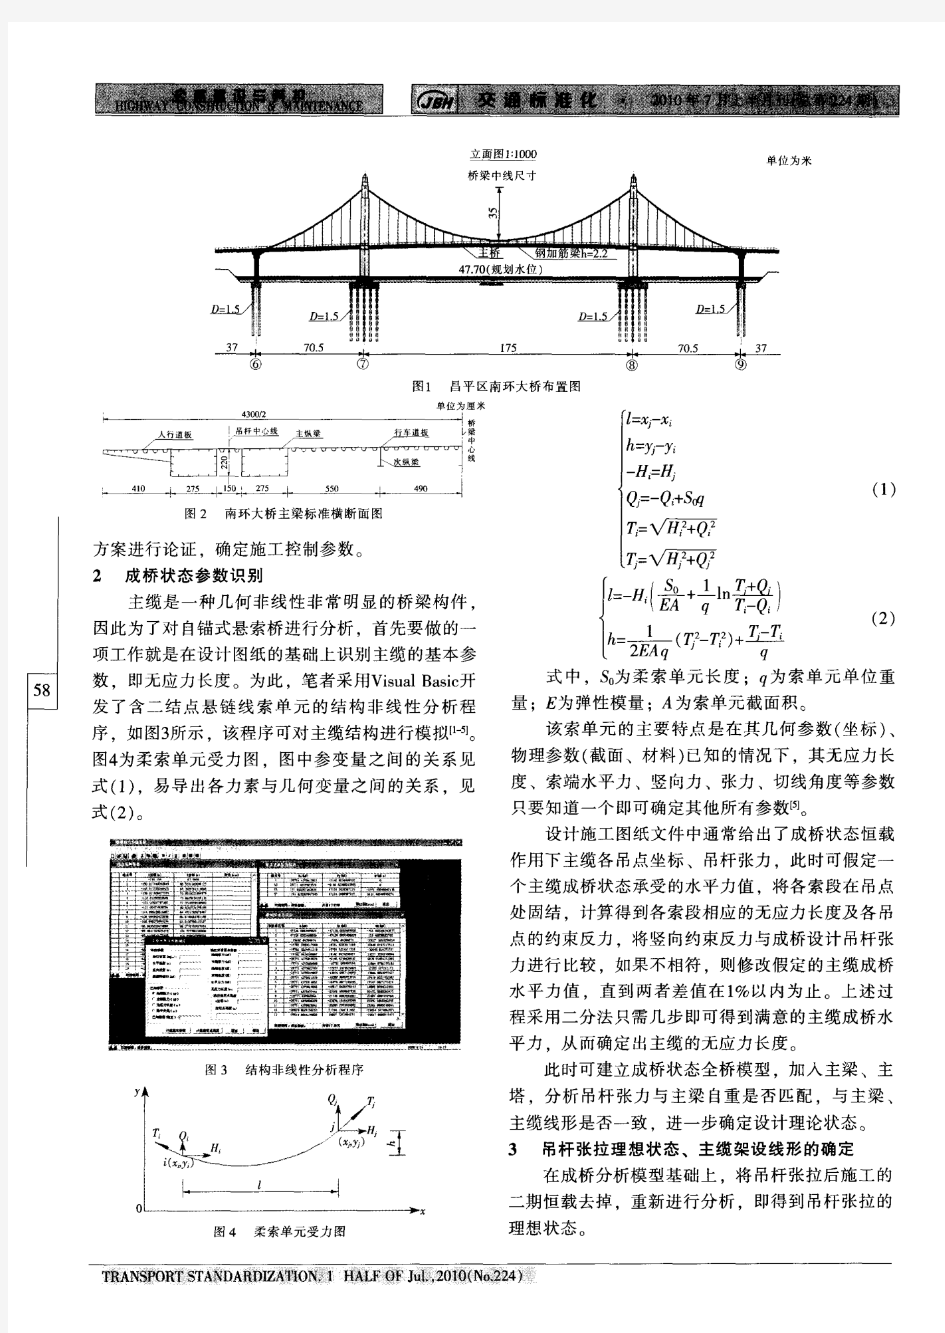 北京市昌平区南环大桥施工过程仿真分析